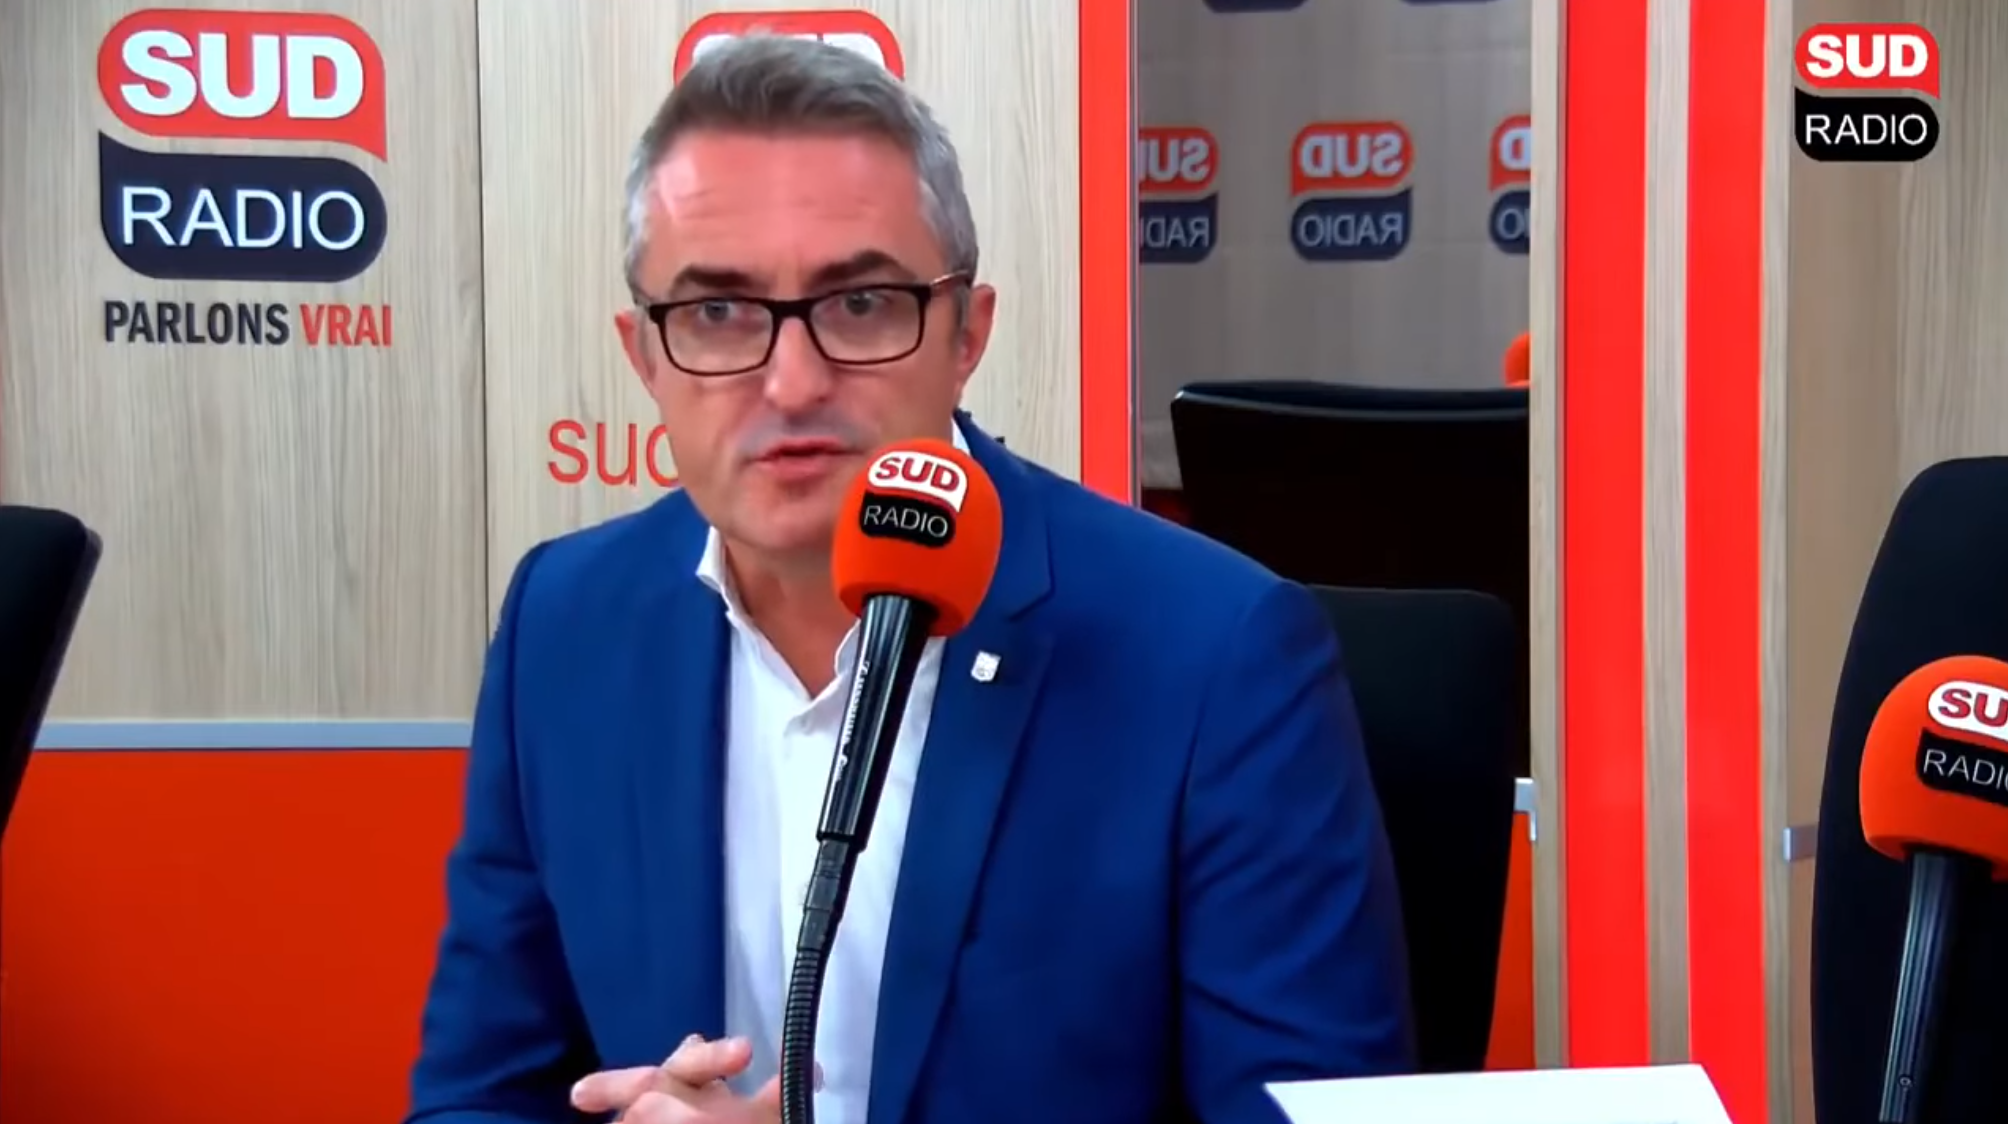 BFM TV : Stéphane Ravier placé à l’écart des autres invités parce que non-vacciné (VIDÉO)